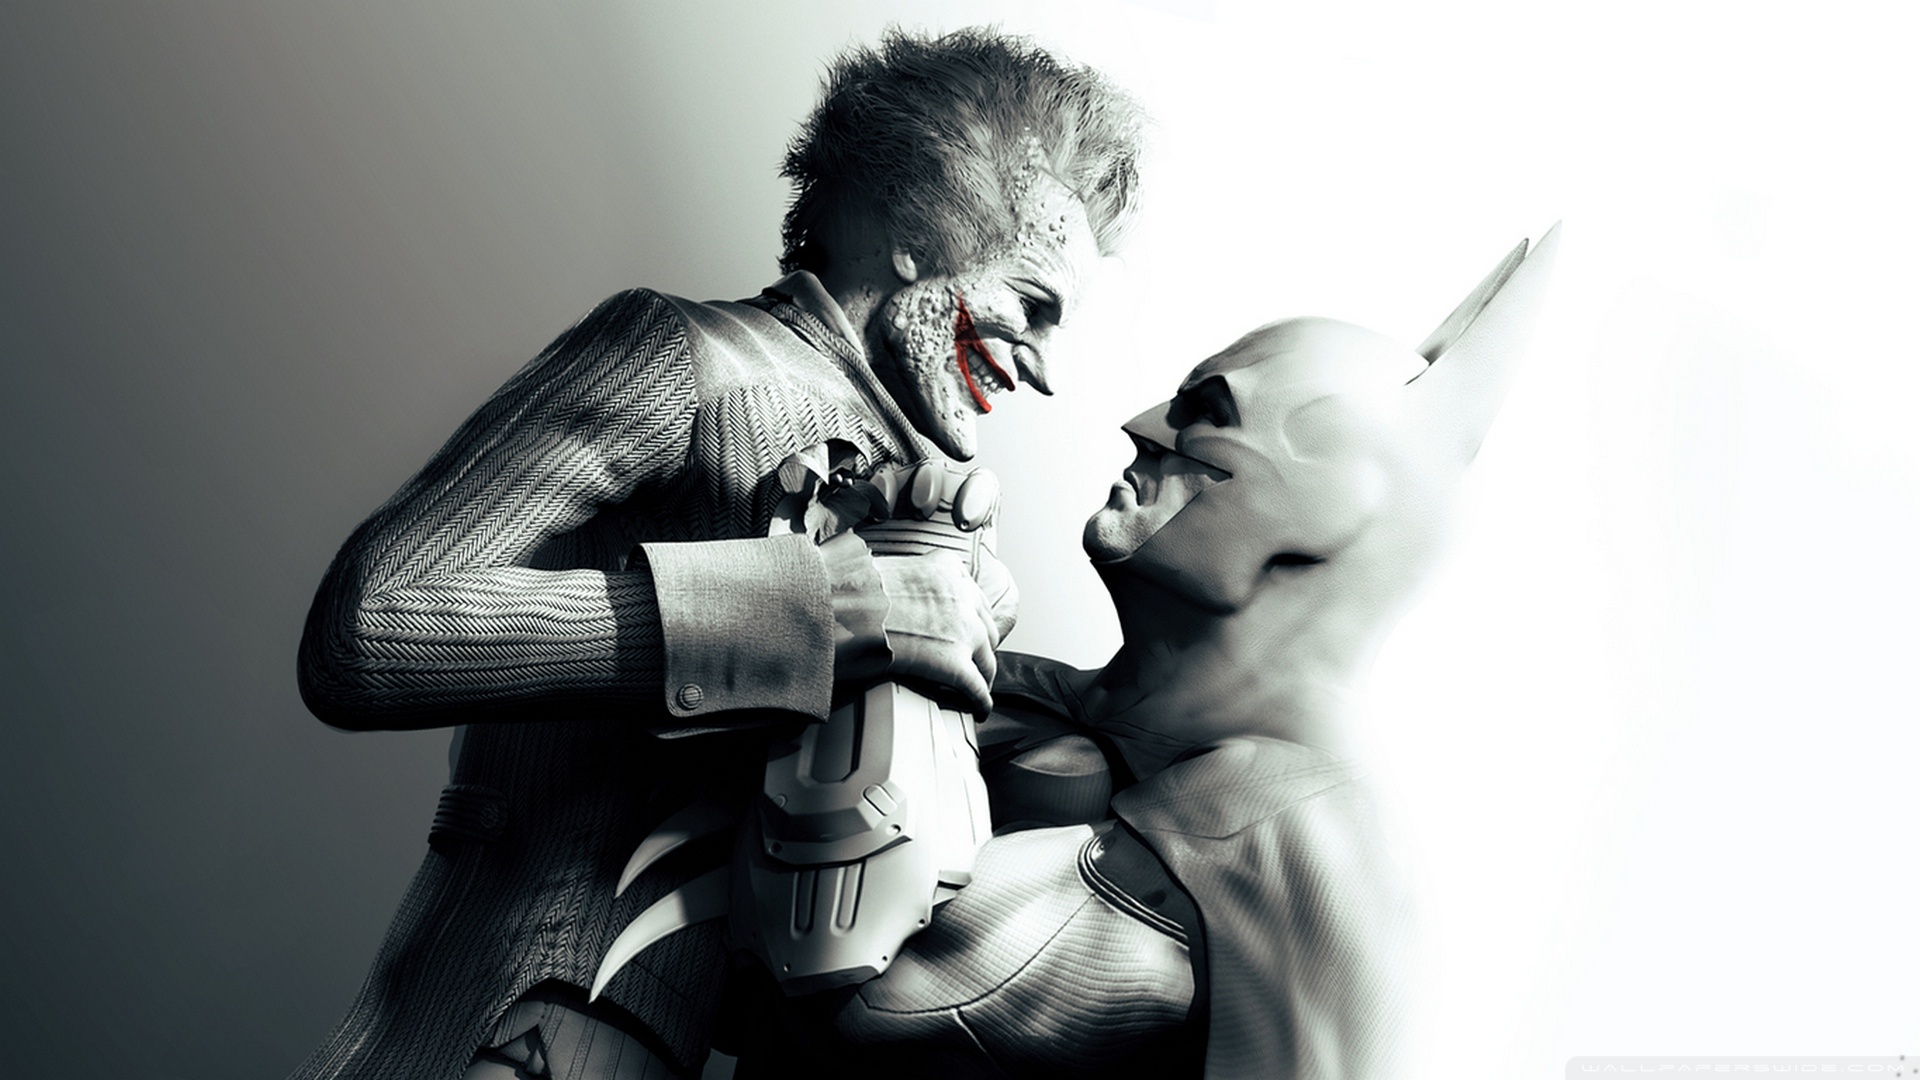 Batman Arkham City HD desktop wallpaper : High Definition : Fullscreen